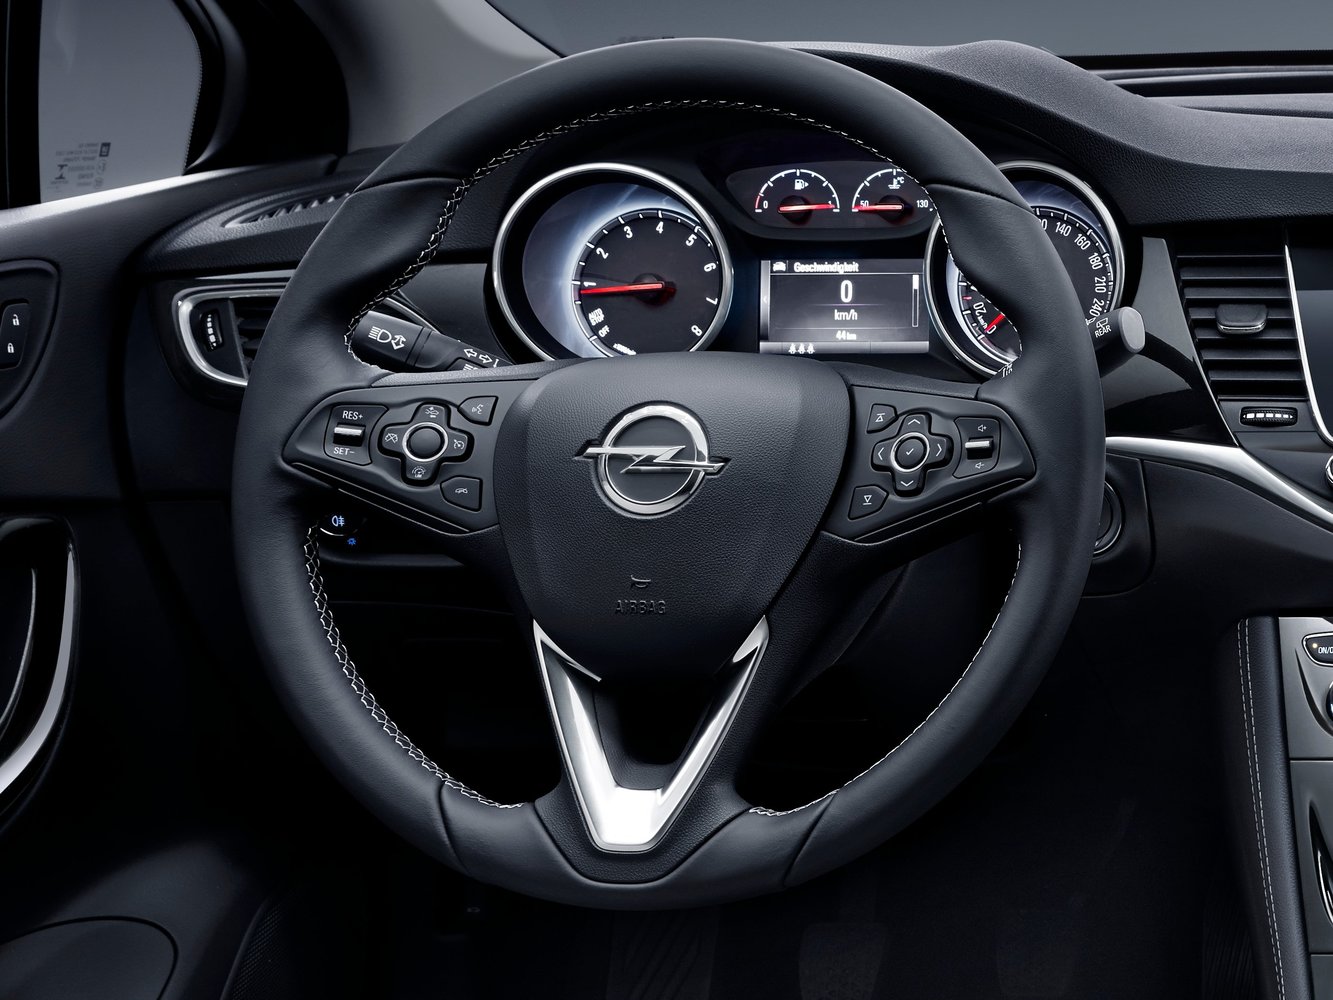 универсал Sports Tourer Opel Astra 2015 - 2016г выпуска модификация 1.0 AMT (105 л.с.)